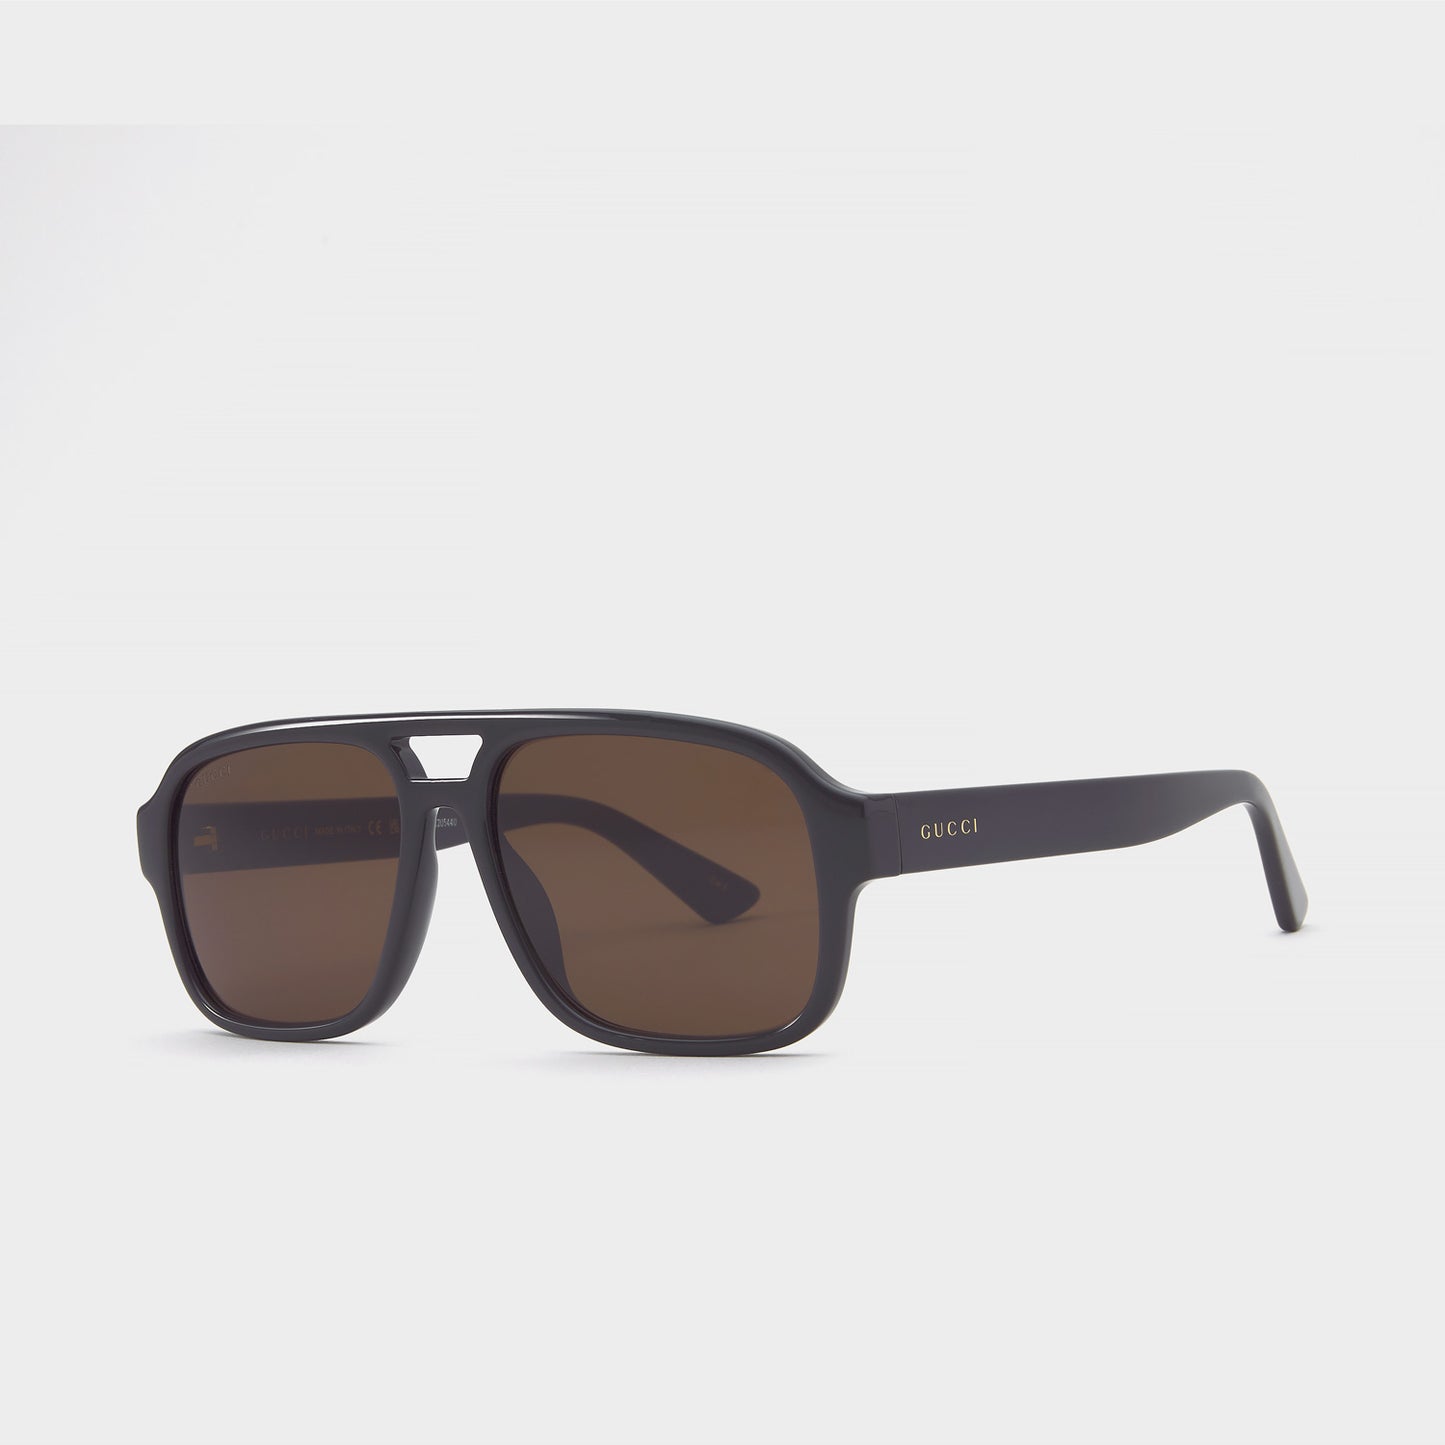 Gucci GG1342S-005 59mm New Sunglasses